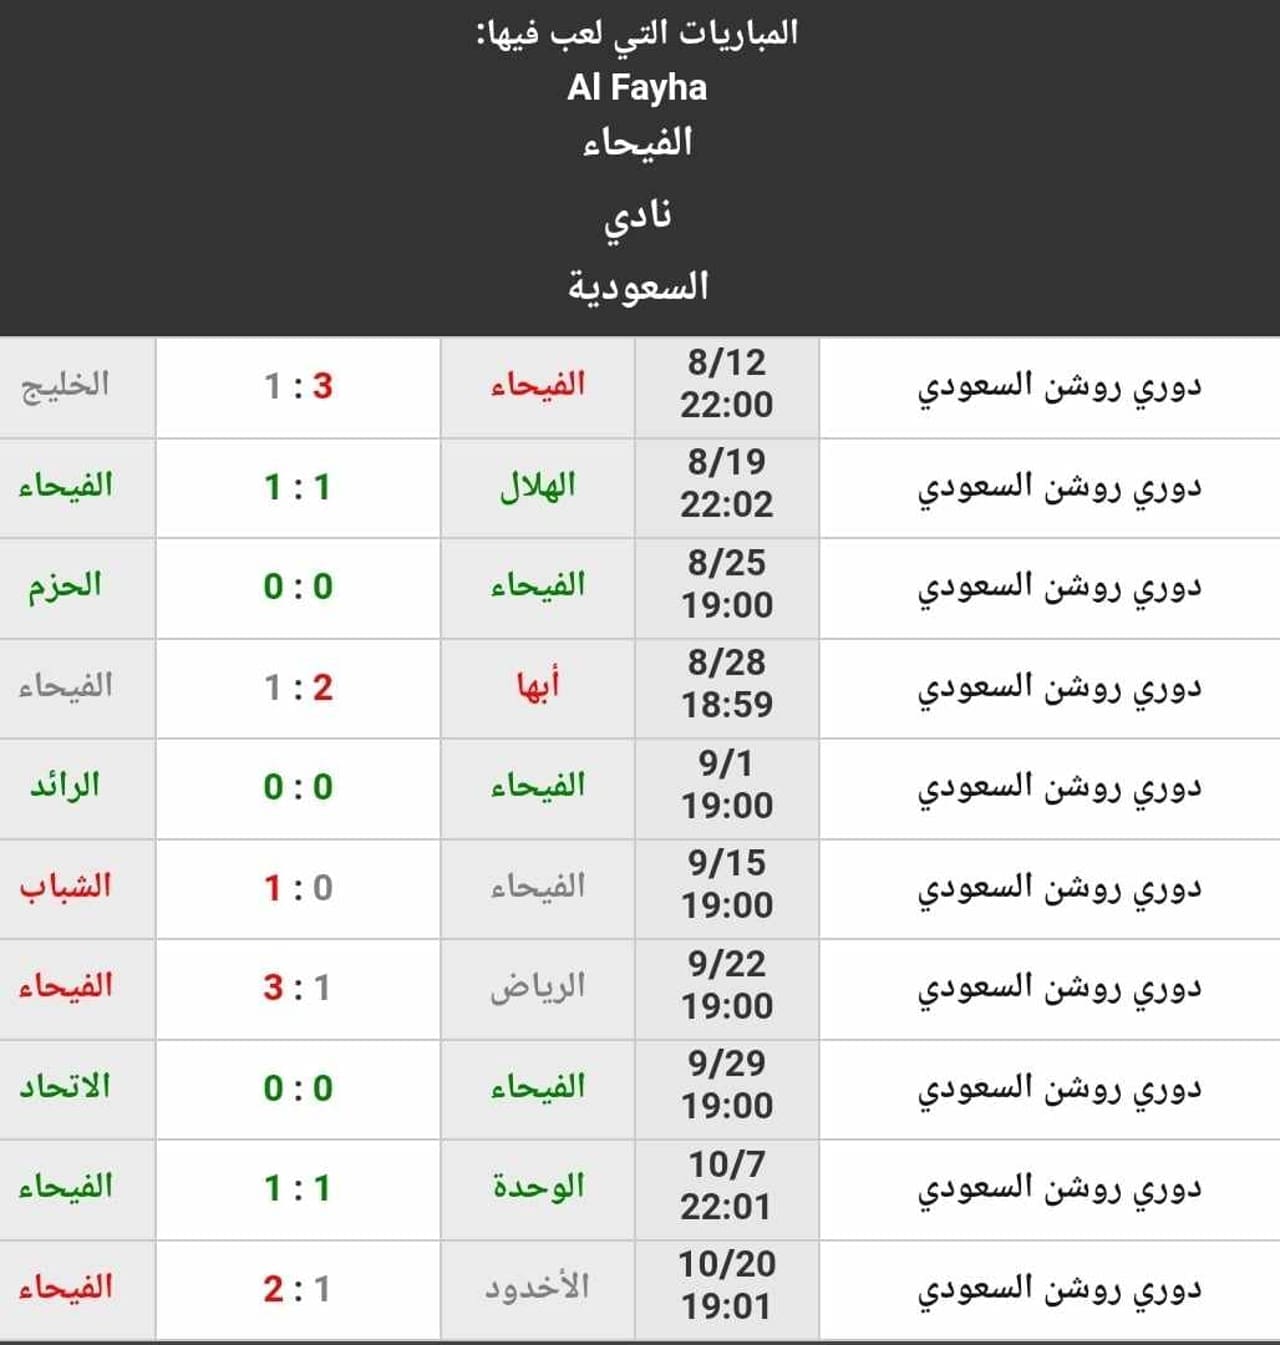 نتائج نادي الفيحاء حتى الجولة 10 من الدوري السعودي